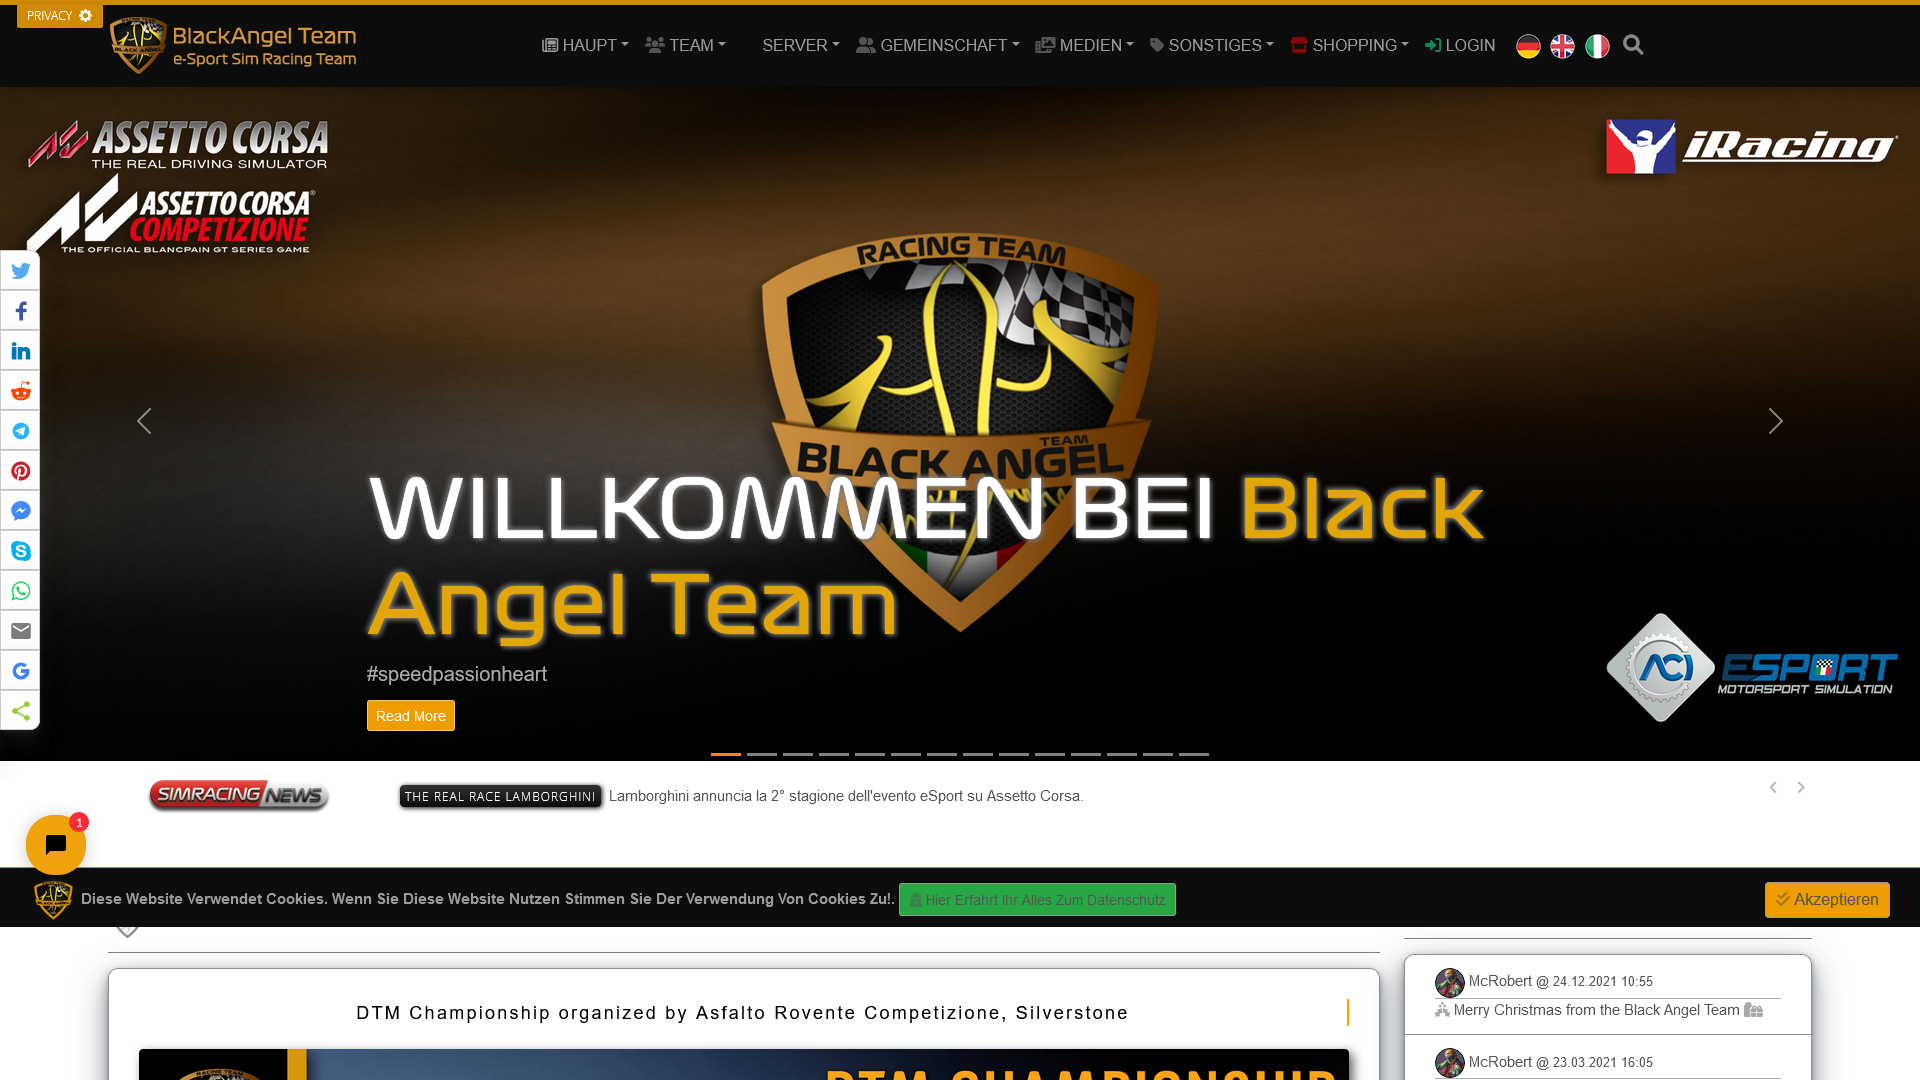 Black Angel Team